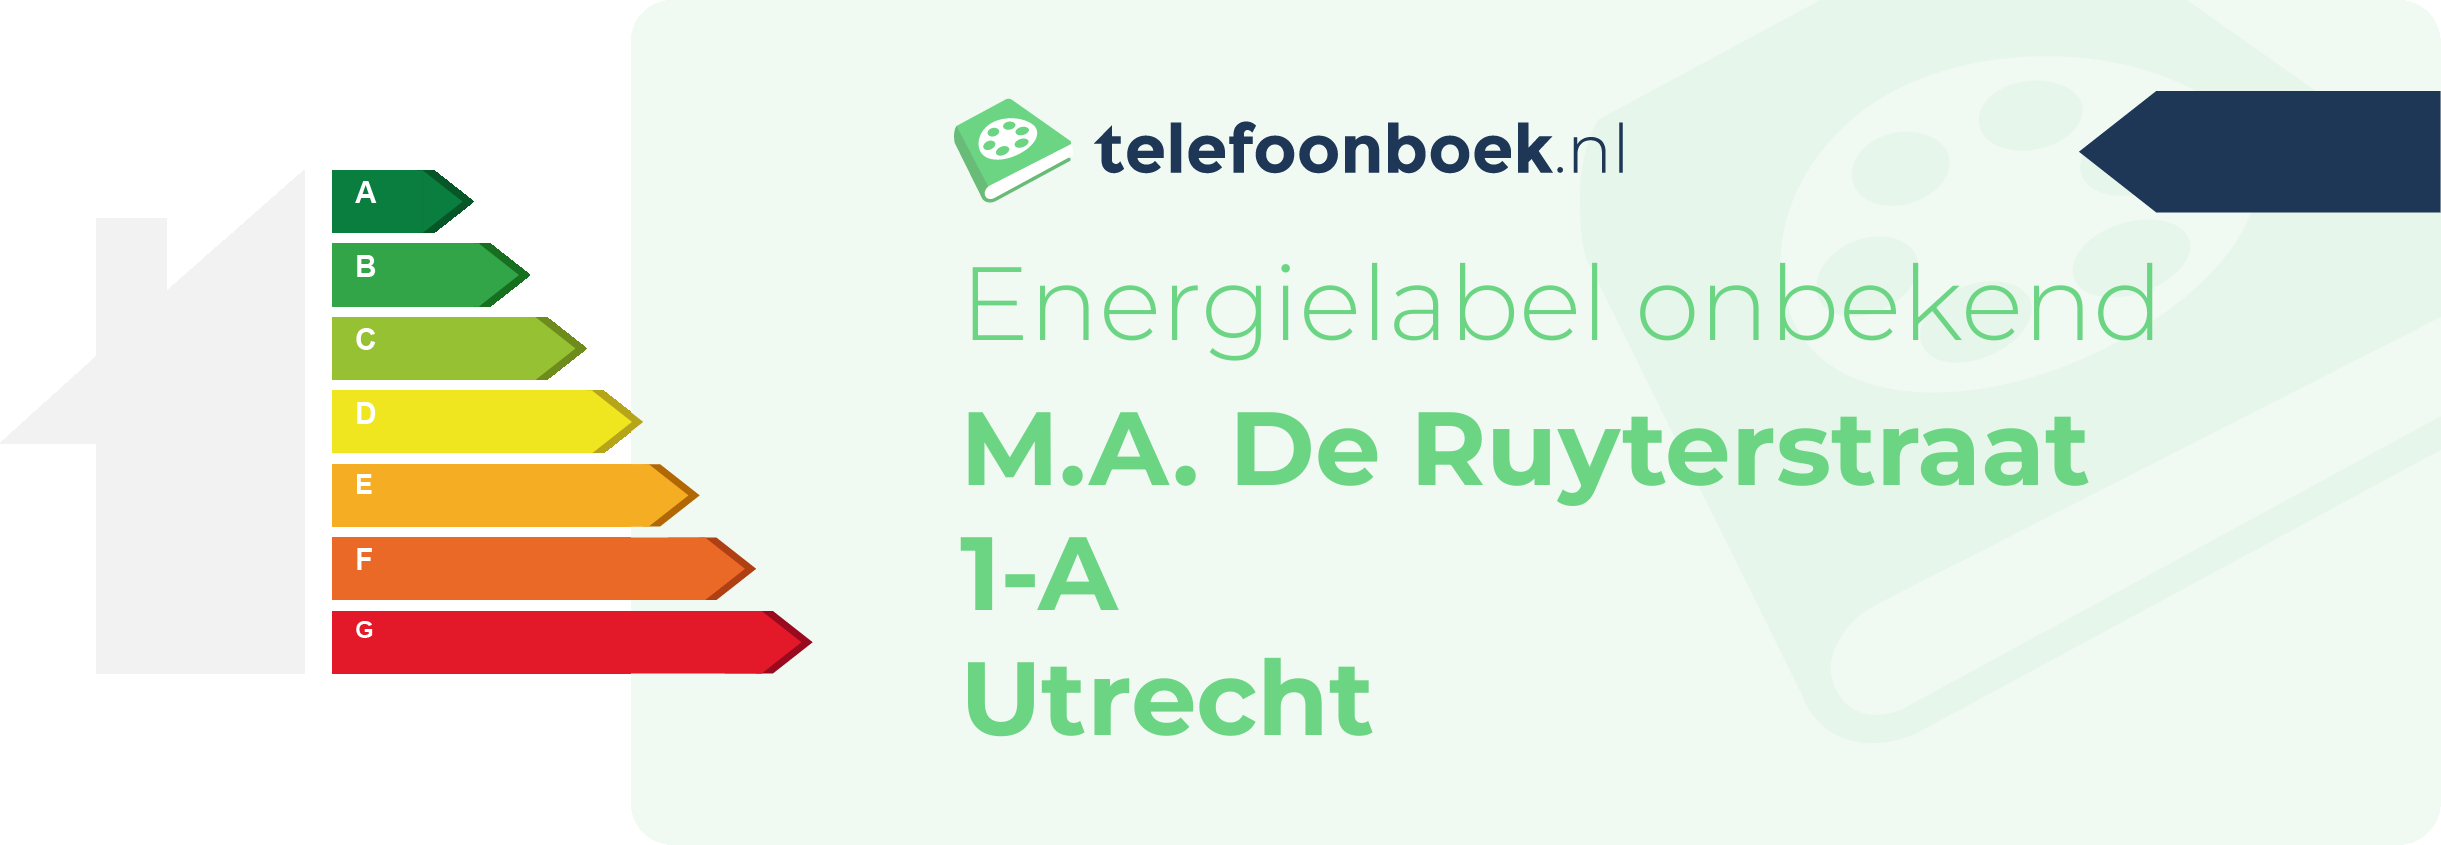 Energielabel M.A. De Ruyterstraat 1-A Utrecht